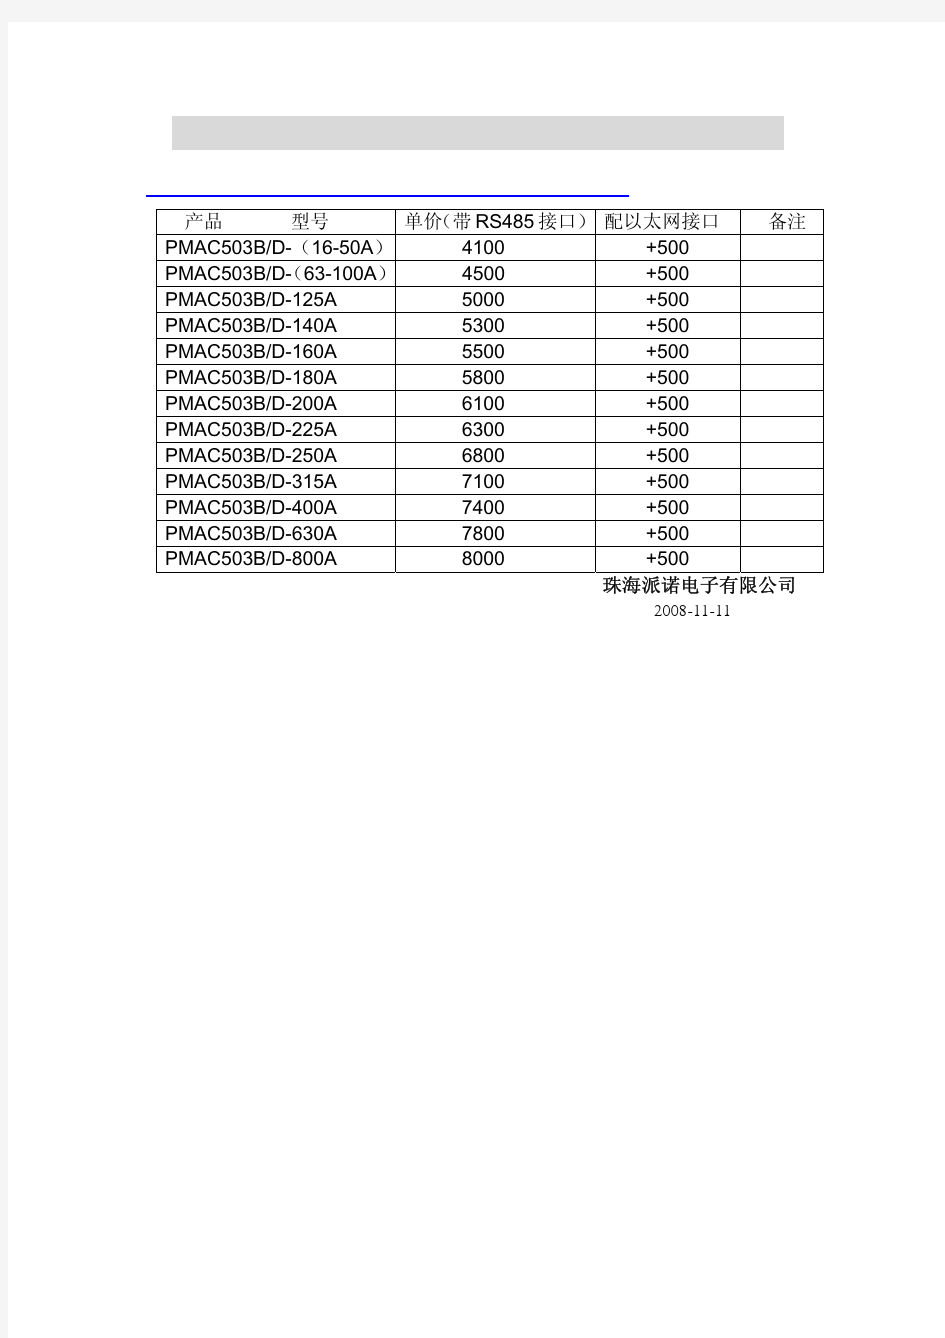 珠海派诺PMAC503M价格表20081212